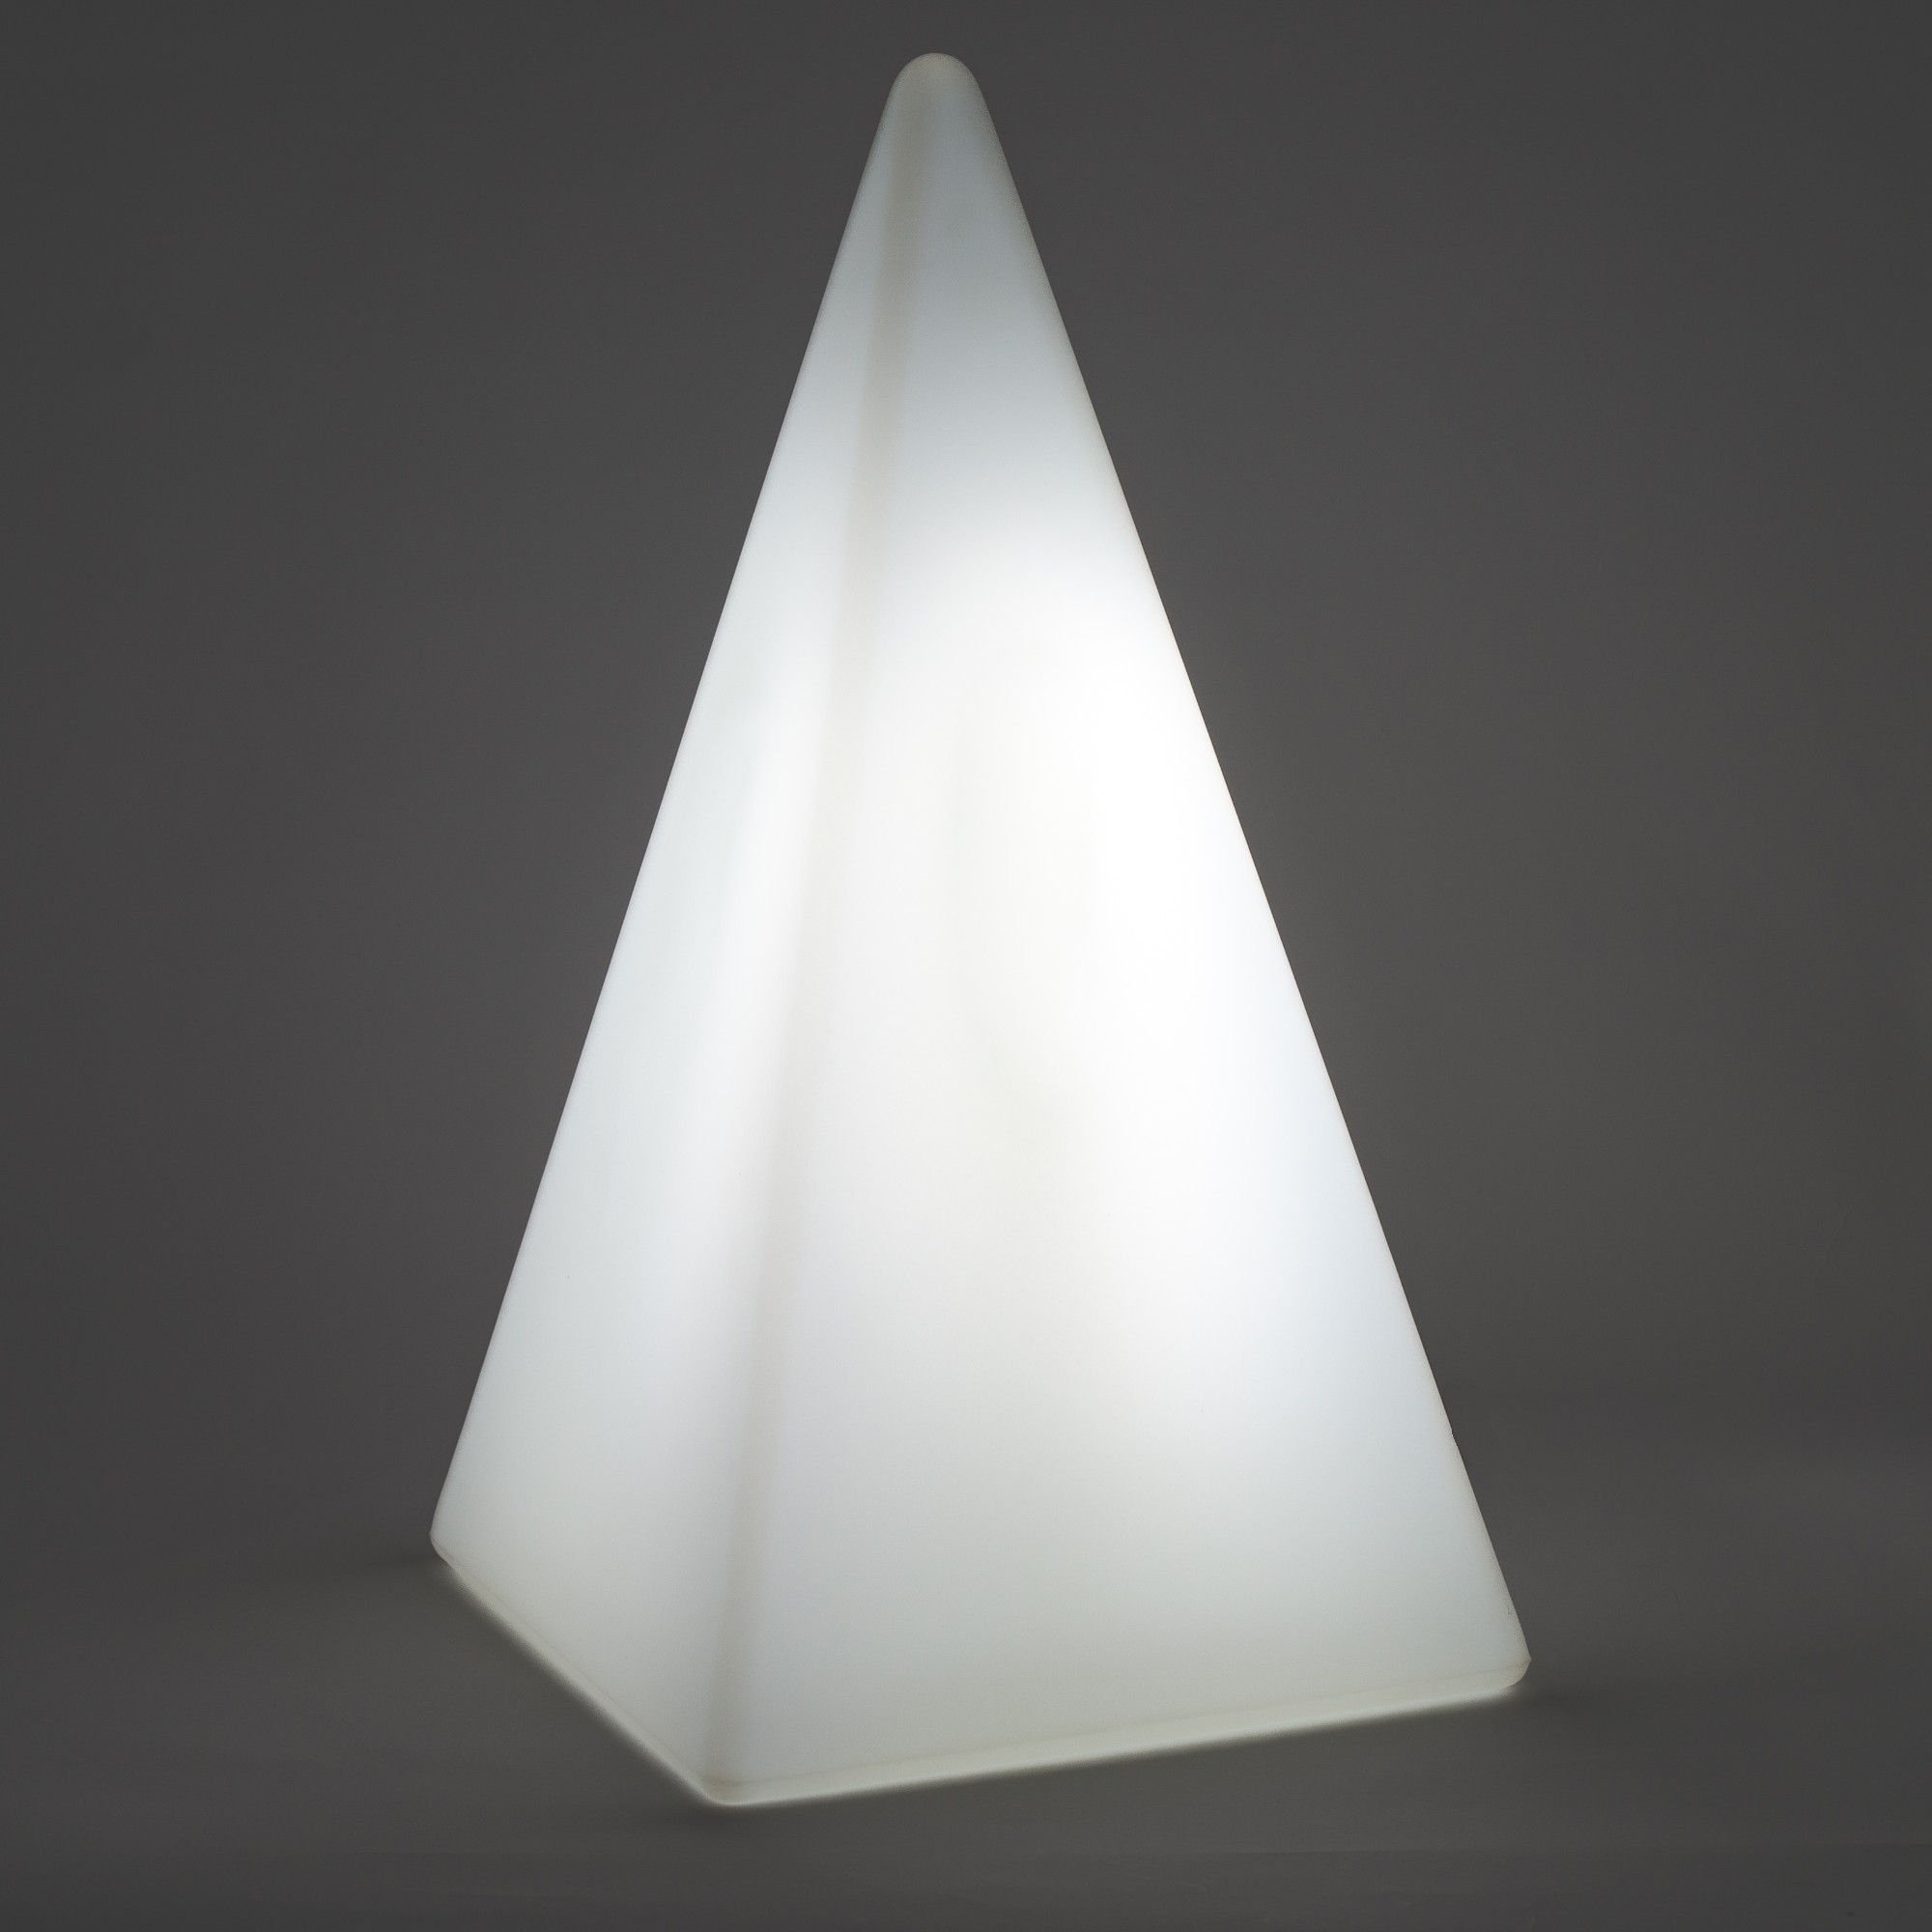 70301 Standleuchte Pyramide 73 cm der Firma EPSTEIN Design Leuchten